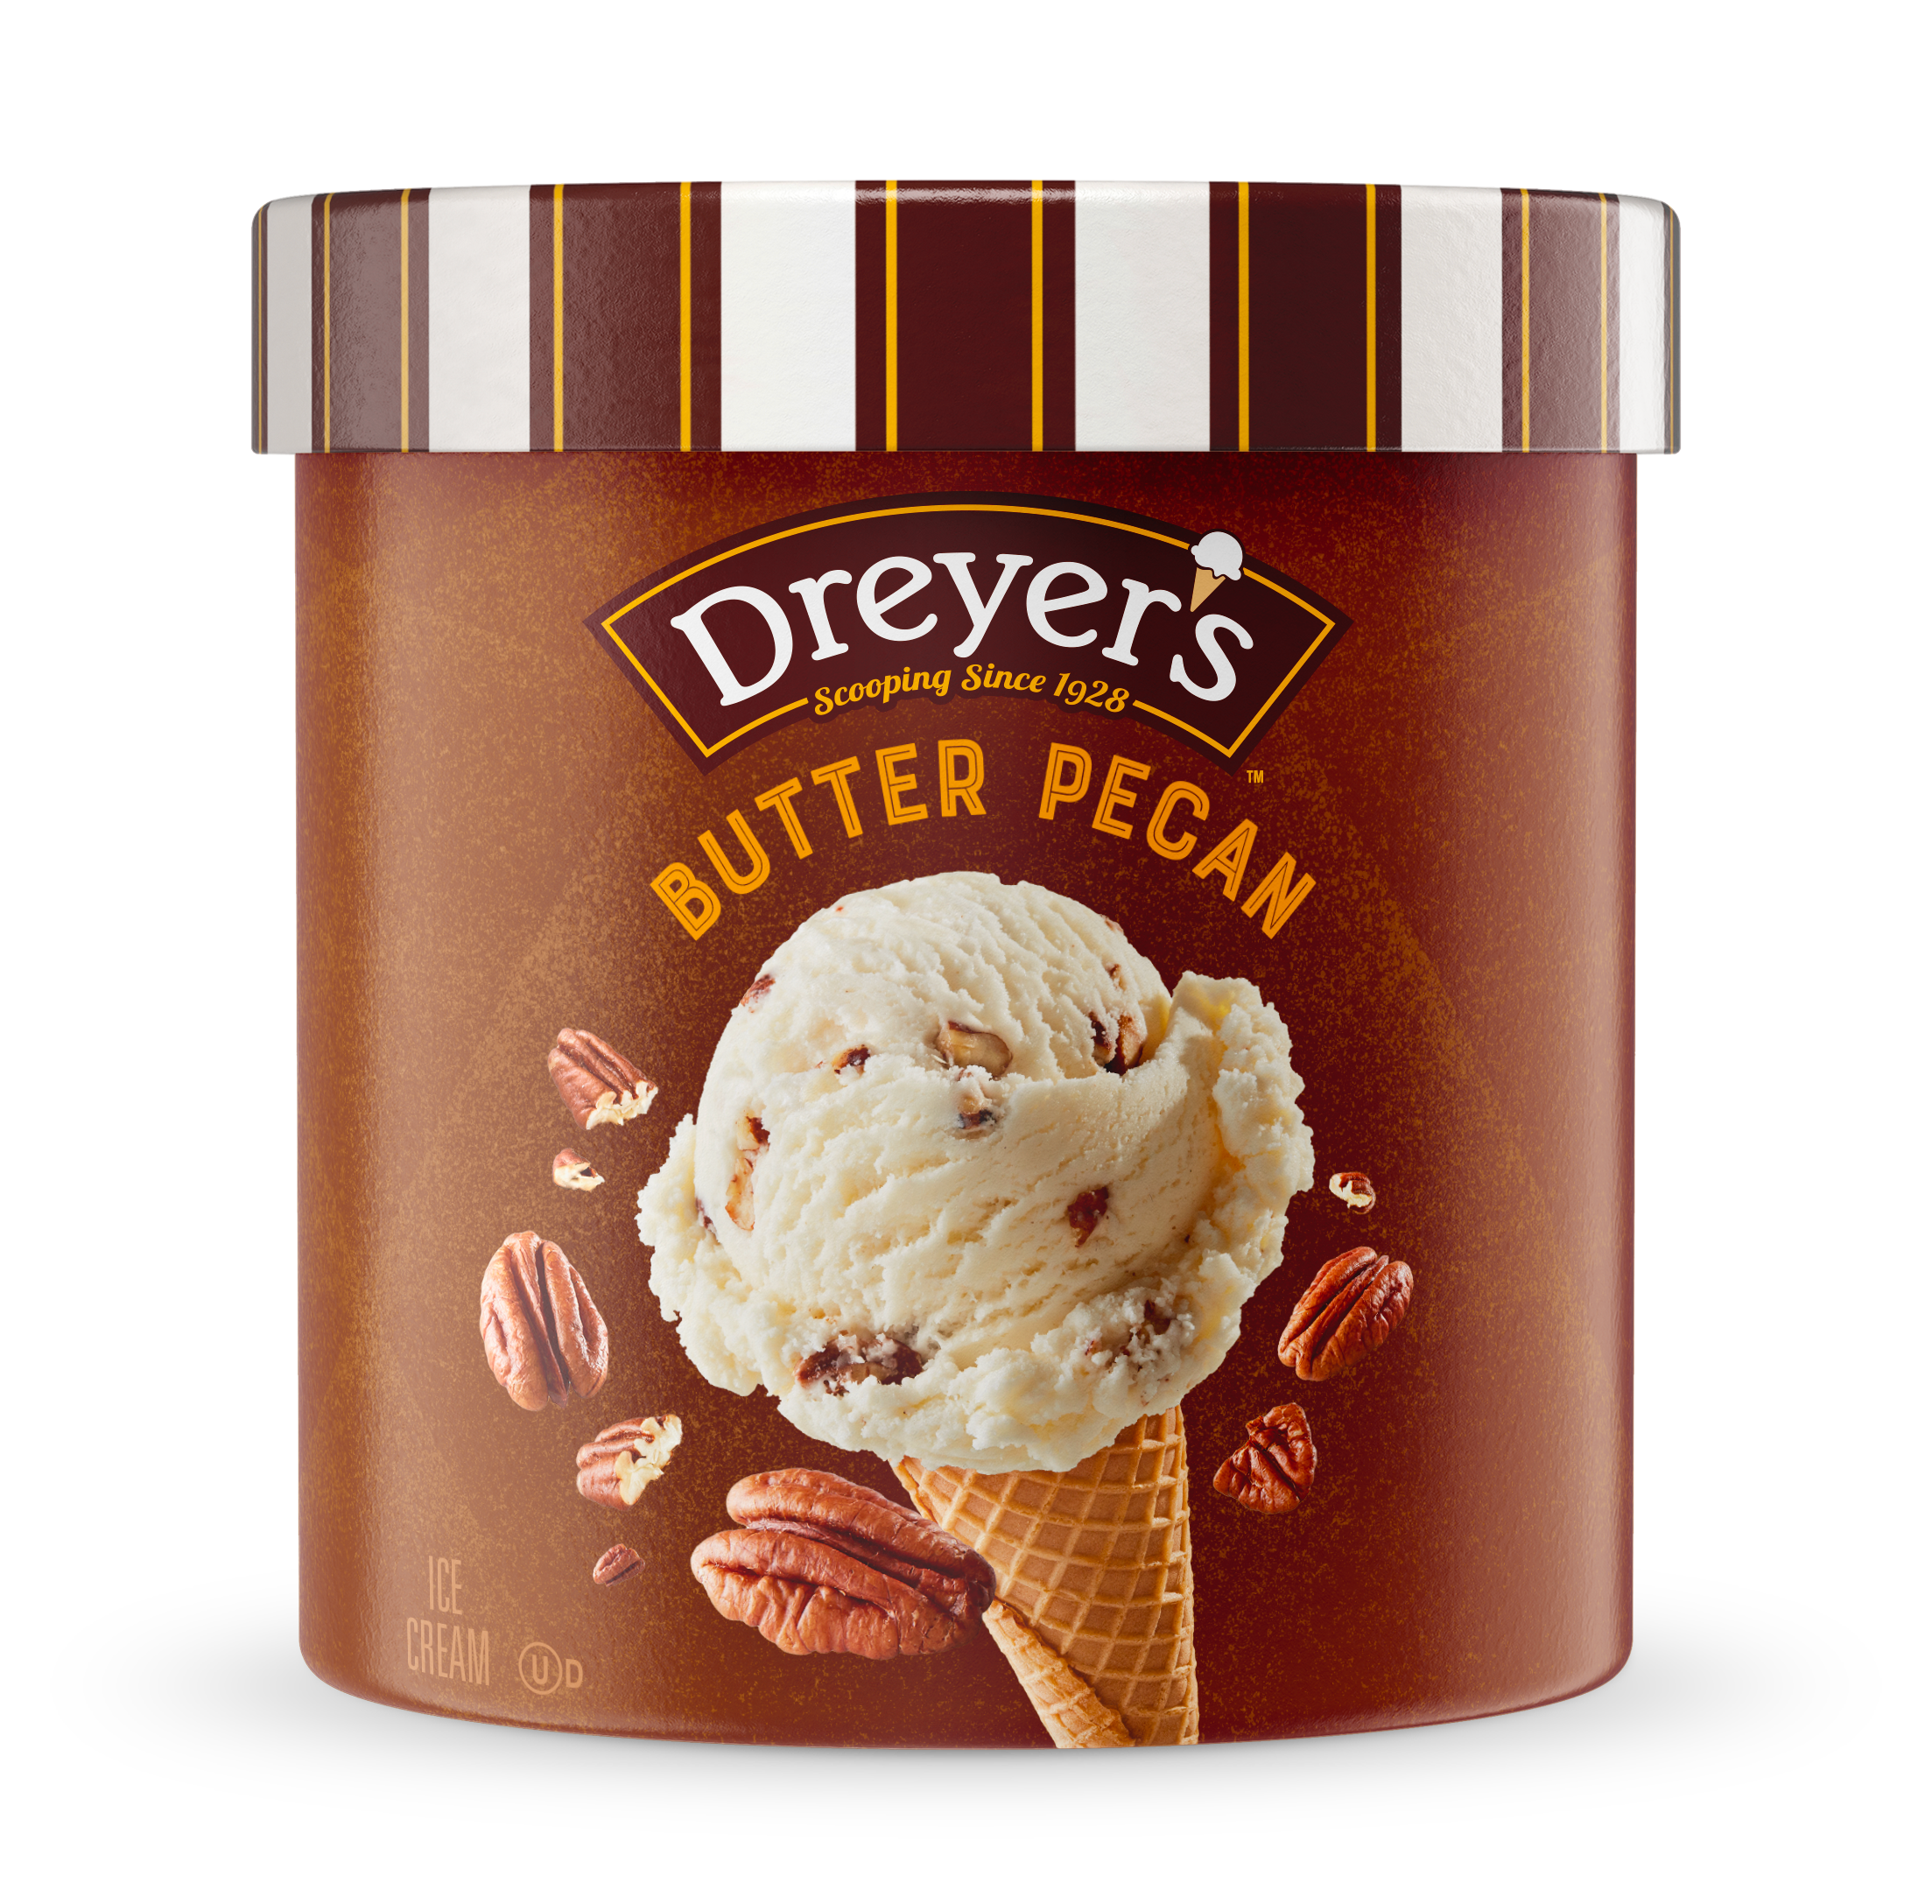 Carton of Dreyer's butter pecan ice cream